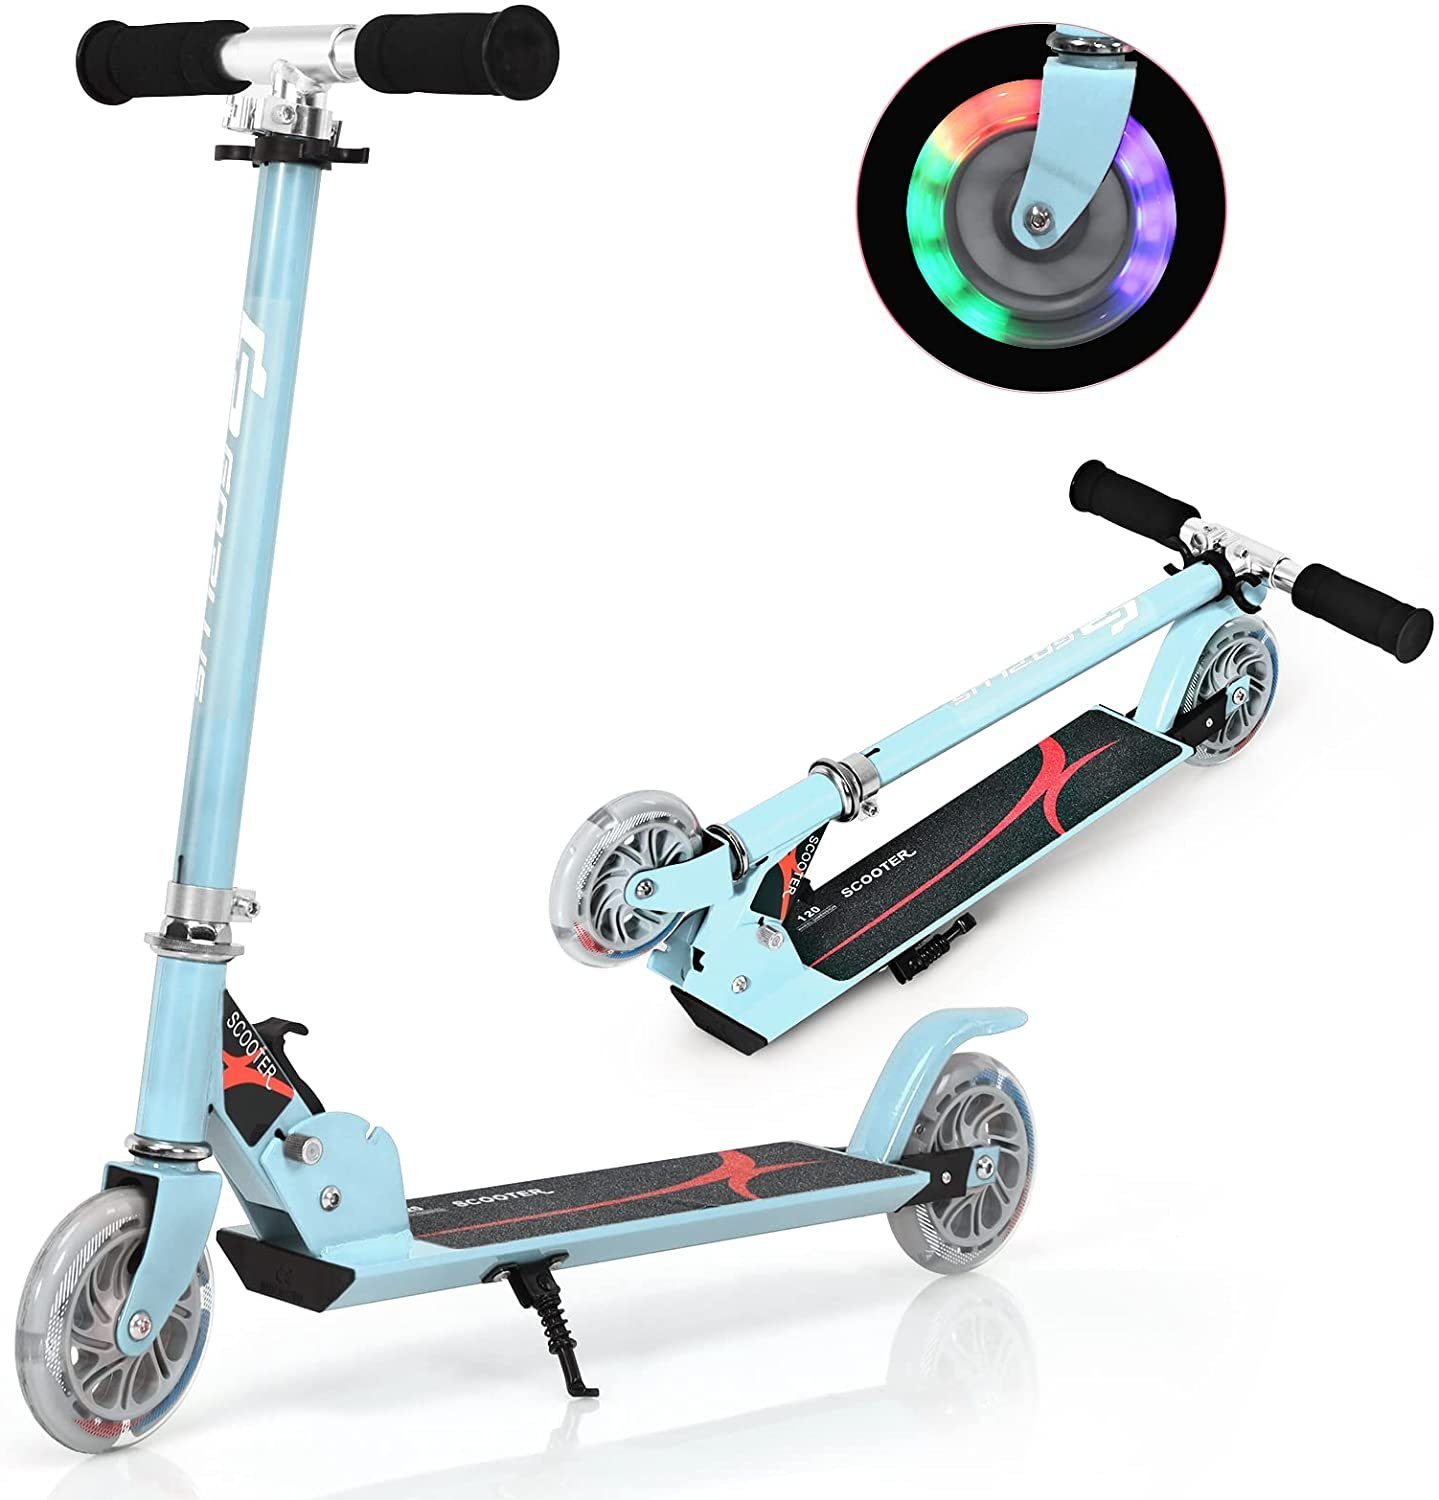 Alu Kinderroller Tretroller Cityroller Kick Scooter Board Roller mit 3 LED Räder 